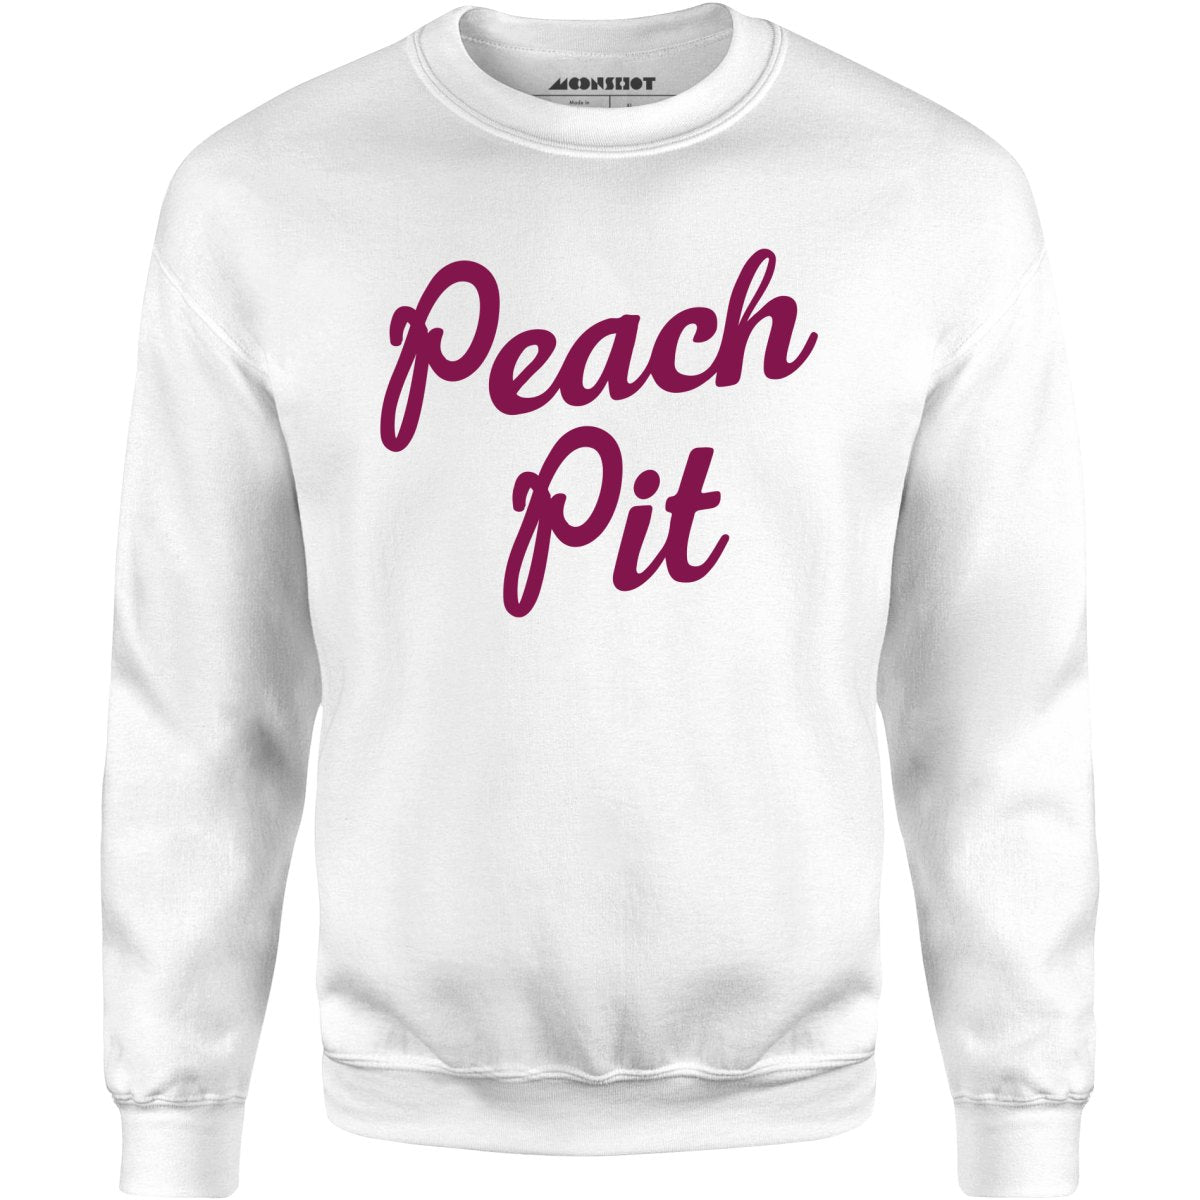 Peach Pit 90210 - Unisex Sweatshirt